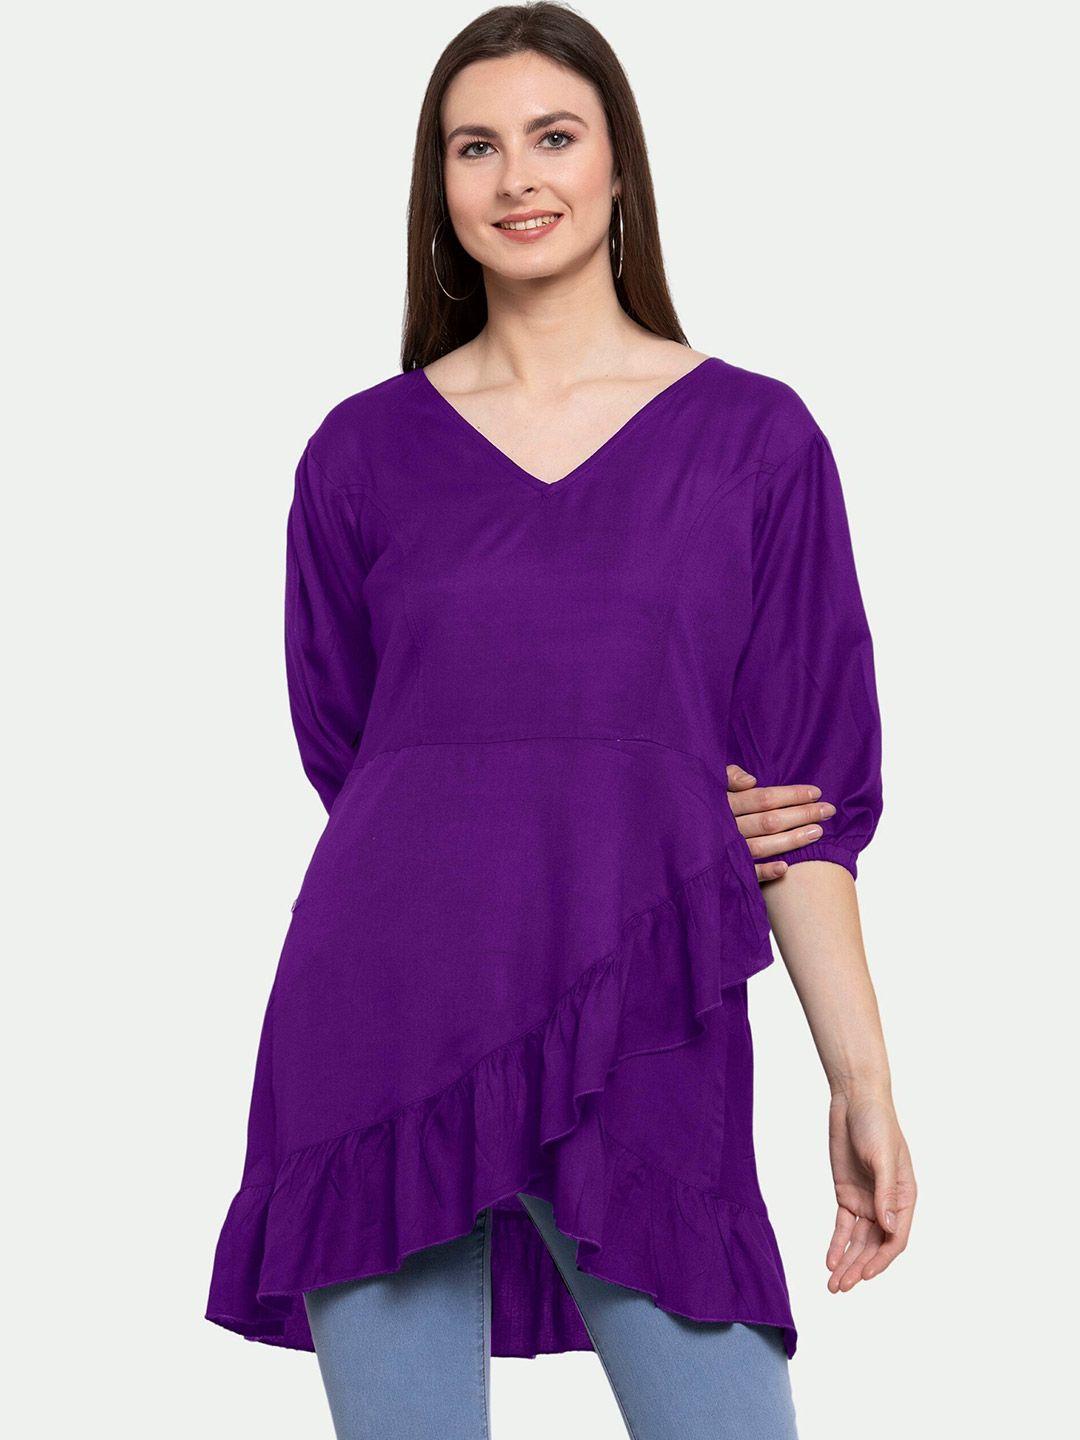 patrorna women purple ruffles high-low longline top